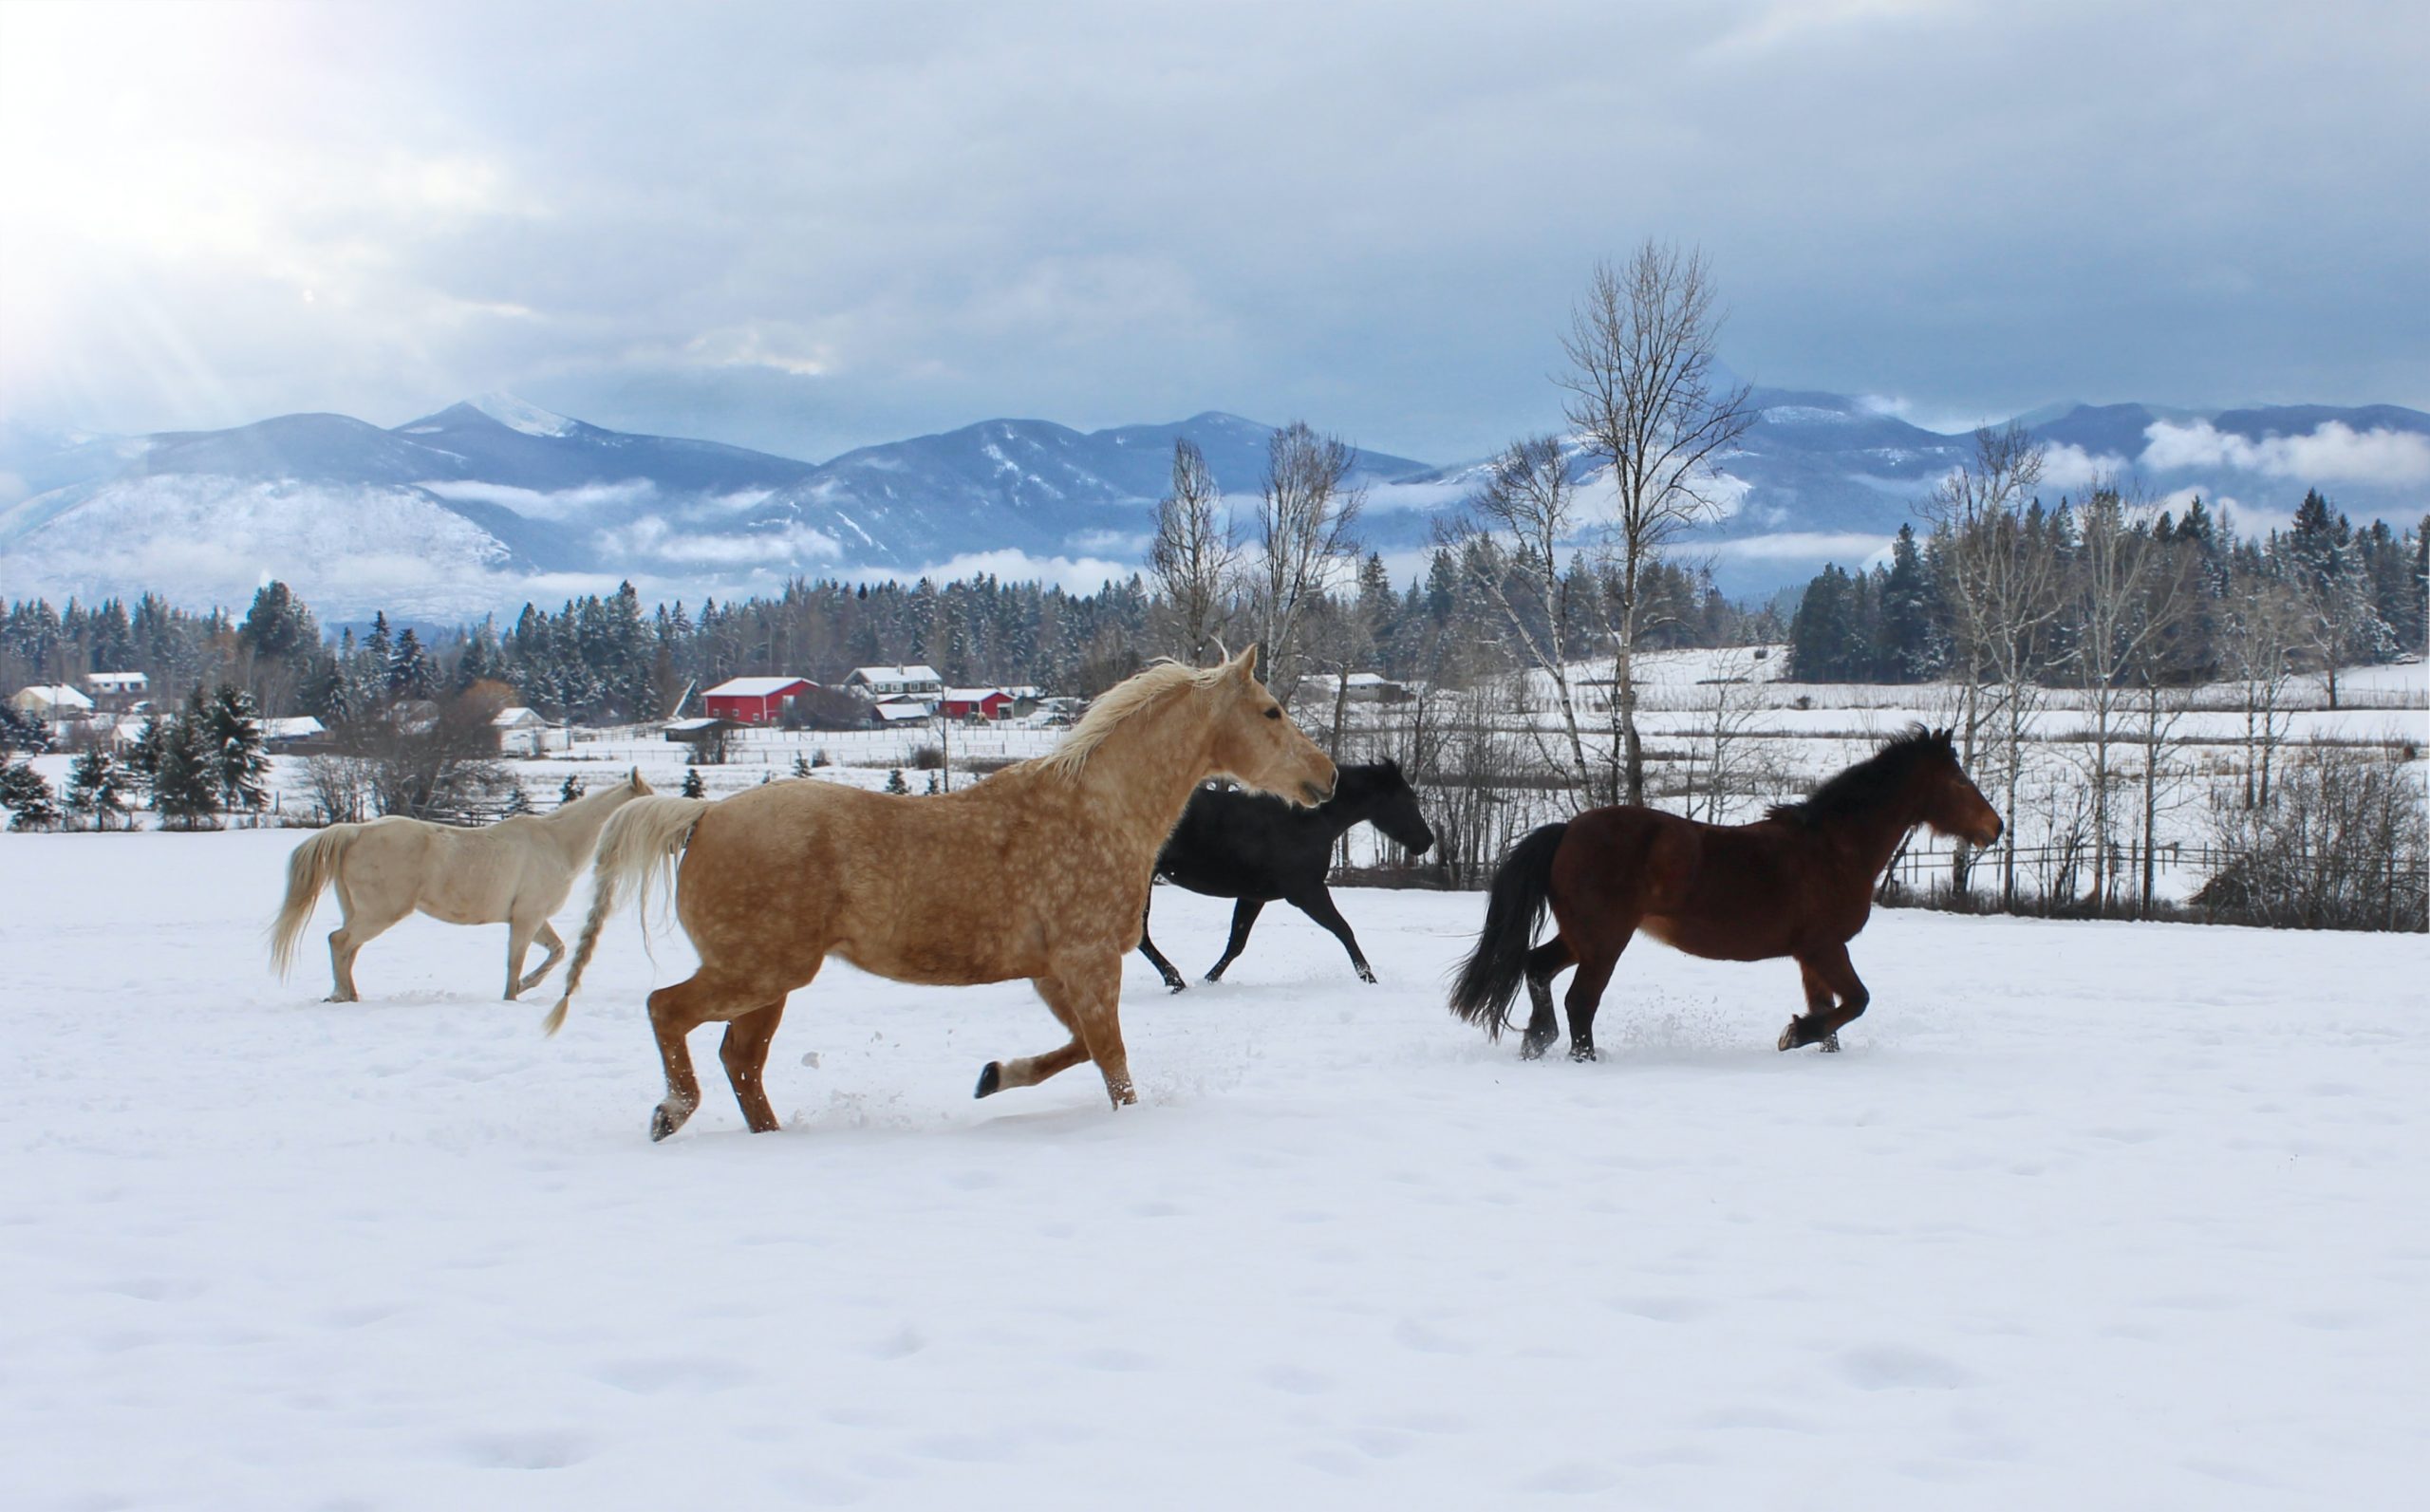 Photographie d'un enclos couvert de neige dans lequel galopent quatre chevaux. Le couple de chevaux de gauche est de couleur palomino clair, et les deux de droite sont marron foncé. À l'arrière-plan, une forêt de pins et plusieurs sommets de montagnes enneigés reposent paisiblement.